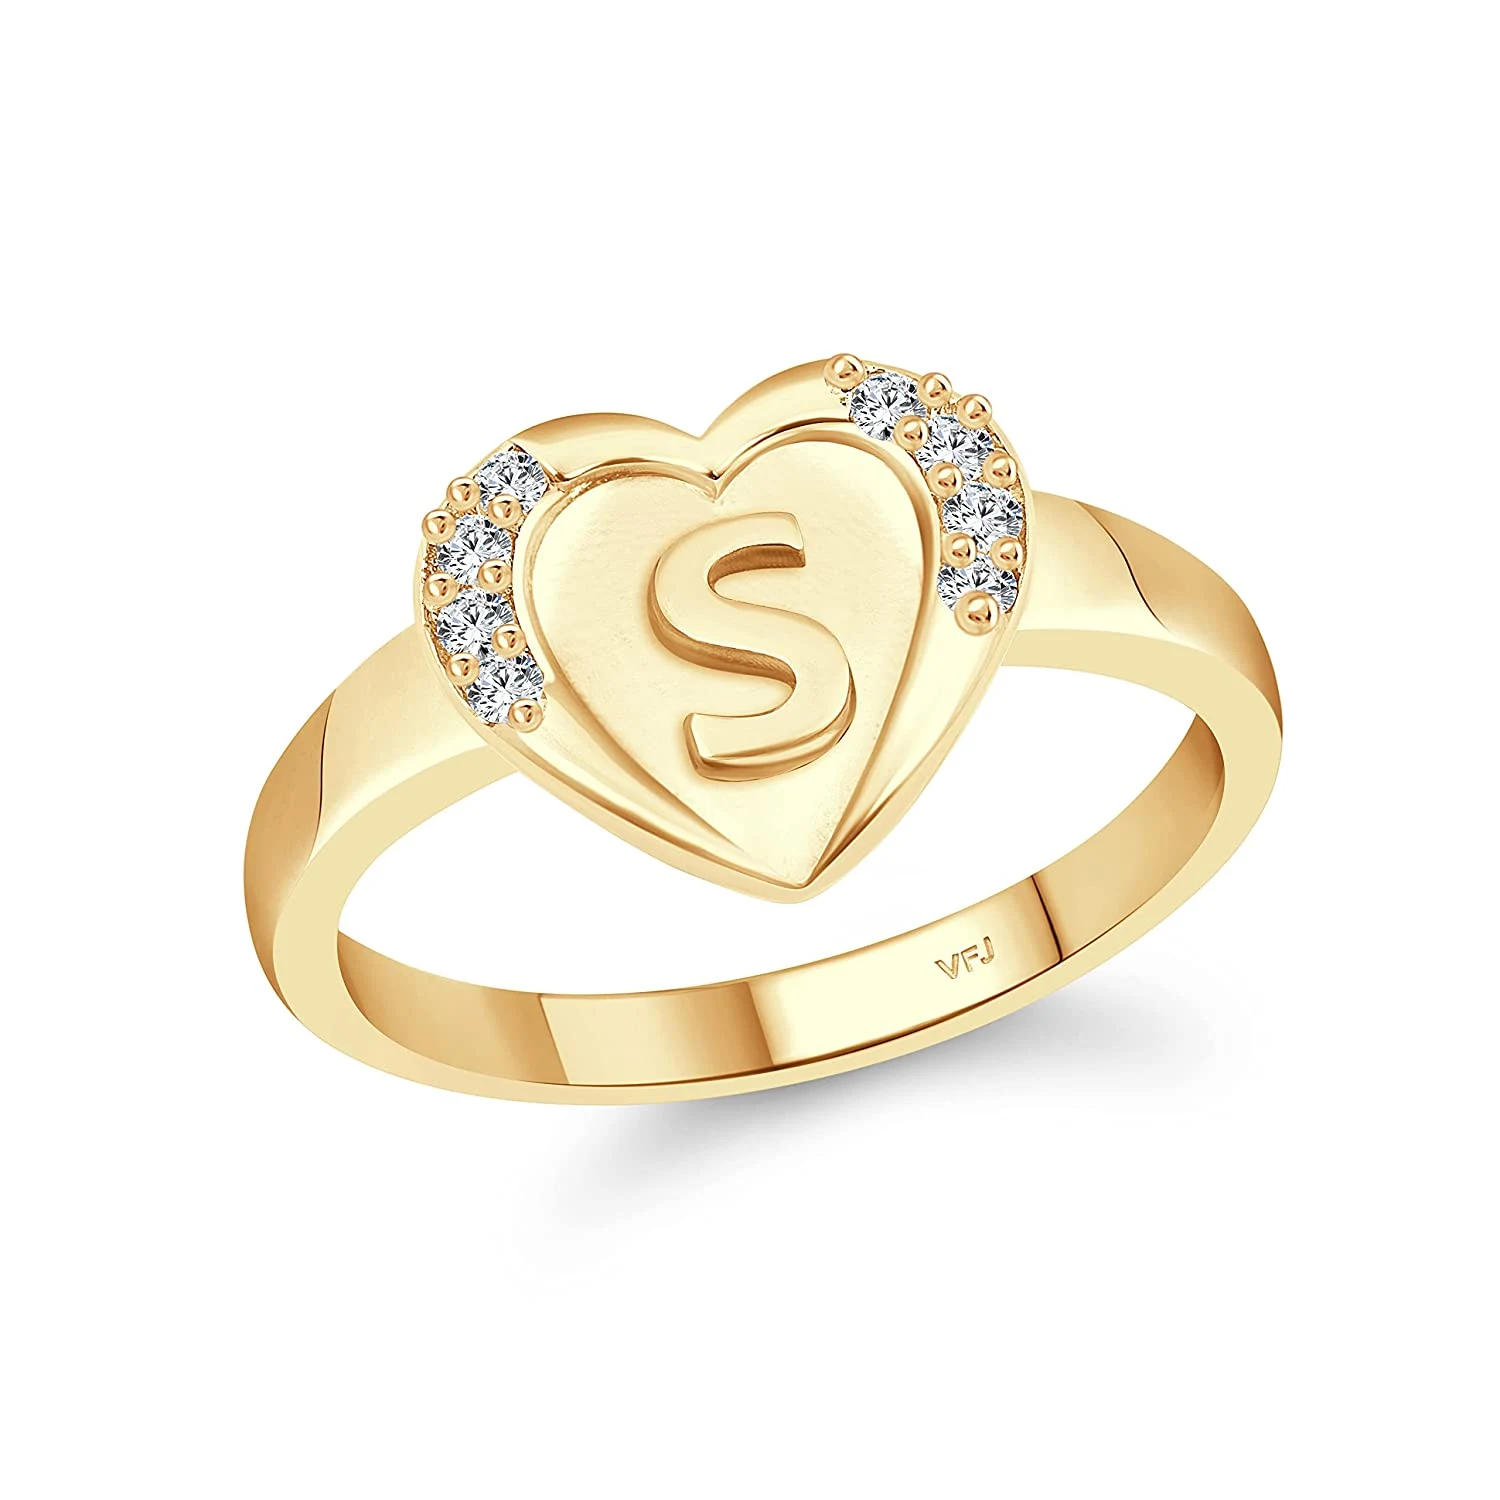 লাভ আংটির ডিজাইন - ছেলে মেয়েদের সোনার আংটি ডিজাইন । রিং আংটি ডিজাইন  - Gold ring designs for girls - NeotericIT.com